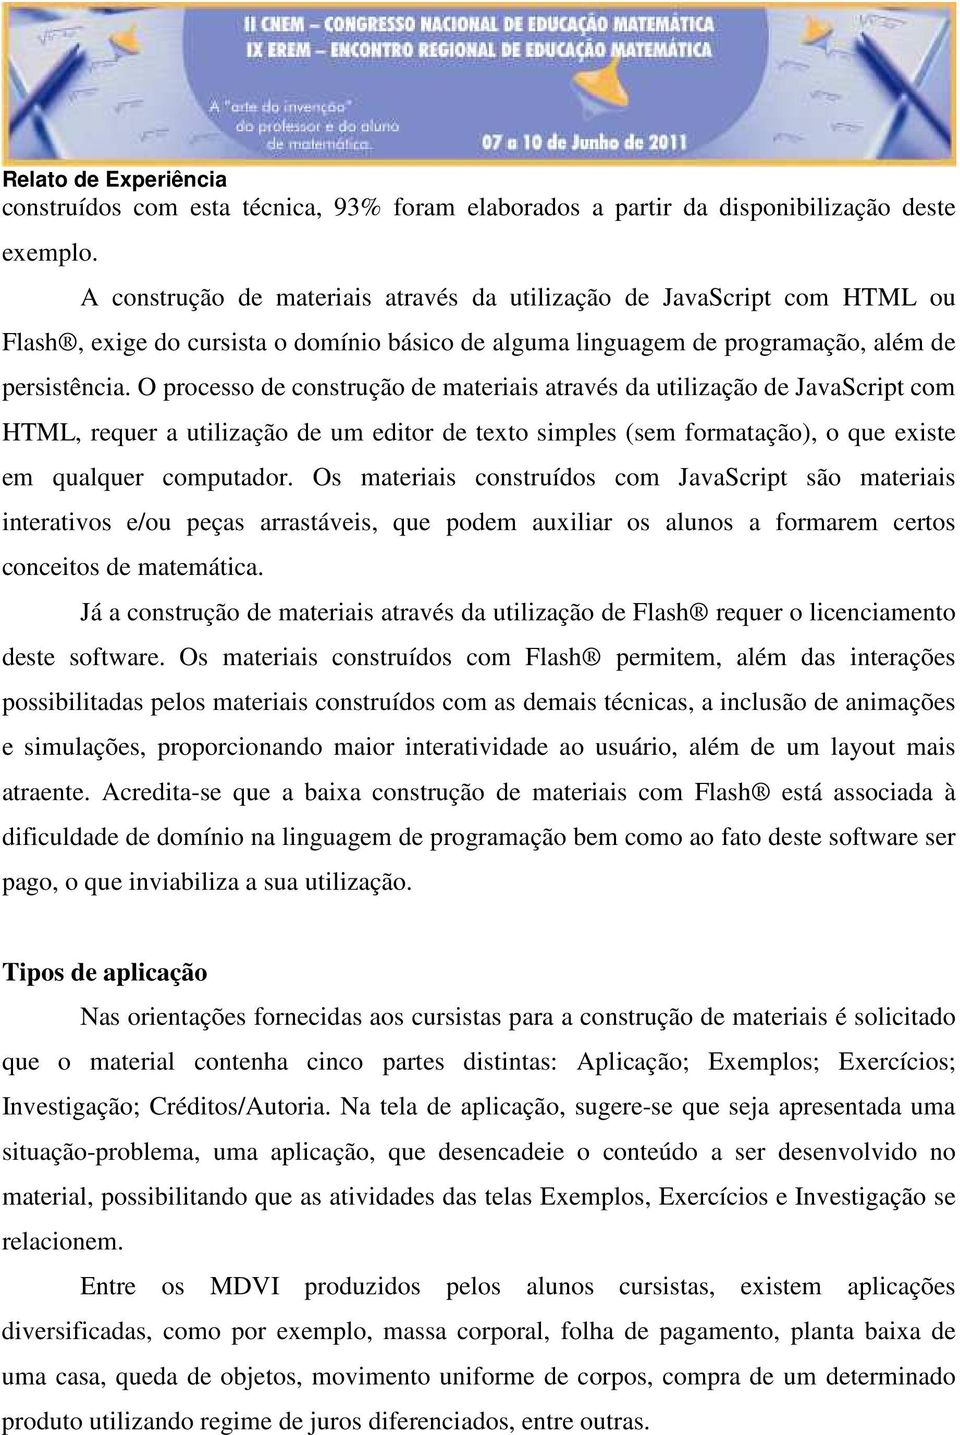 O processo de construção de materiais através da utilização de JavaScript com HTML, requer a utilização de um editor de texto simples (sem formatação), o que existe em qualquer computador.